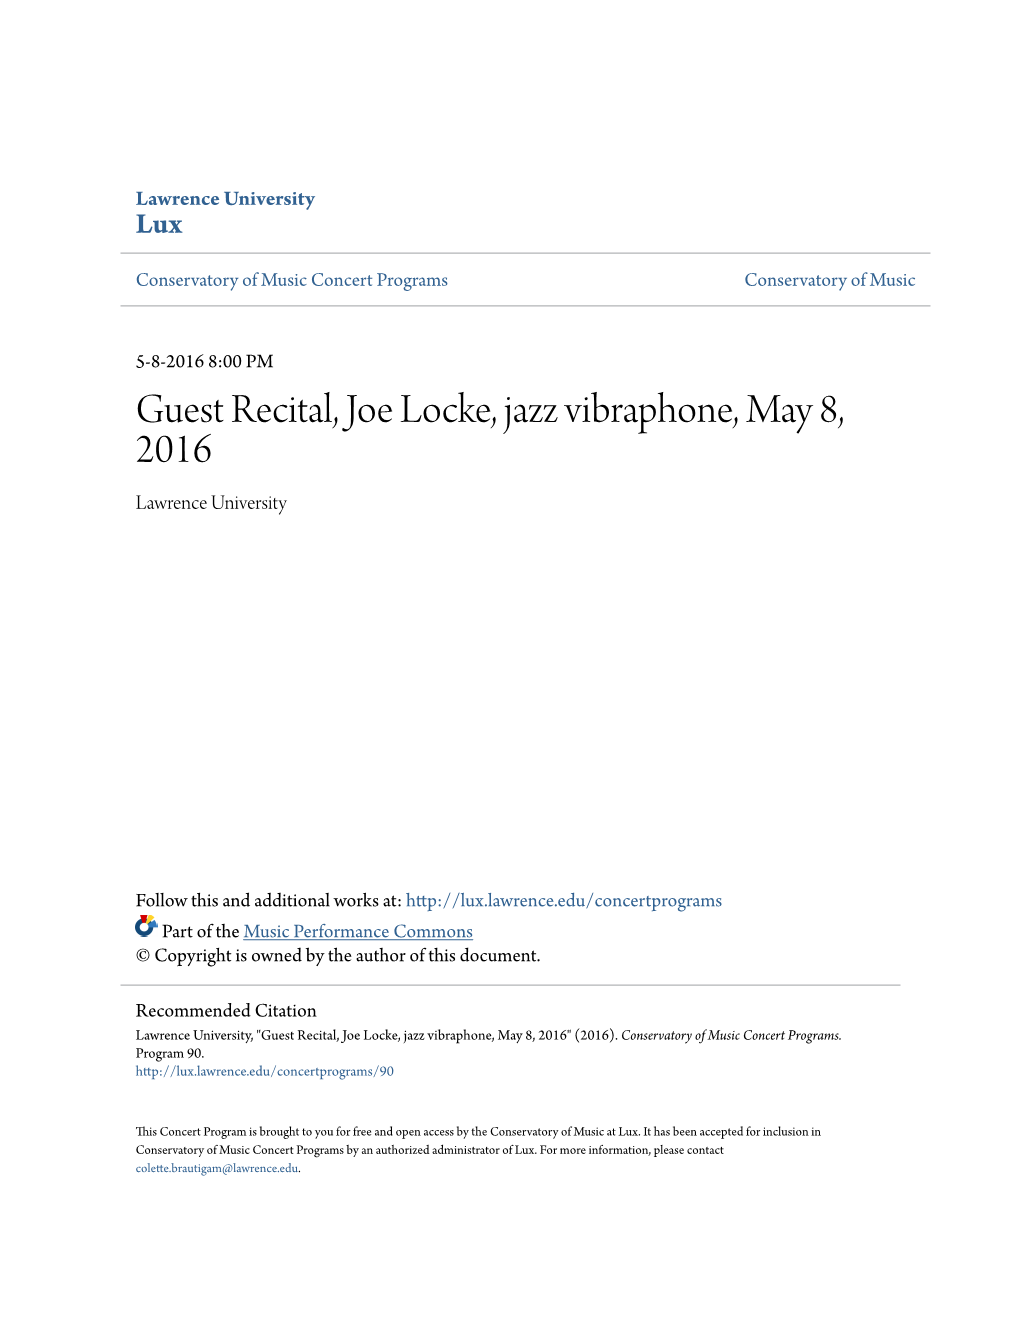 Guest Recital, Joe Locke, Jazz Vibraphone, May 8, 2016 Lawrence University